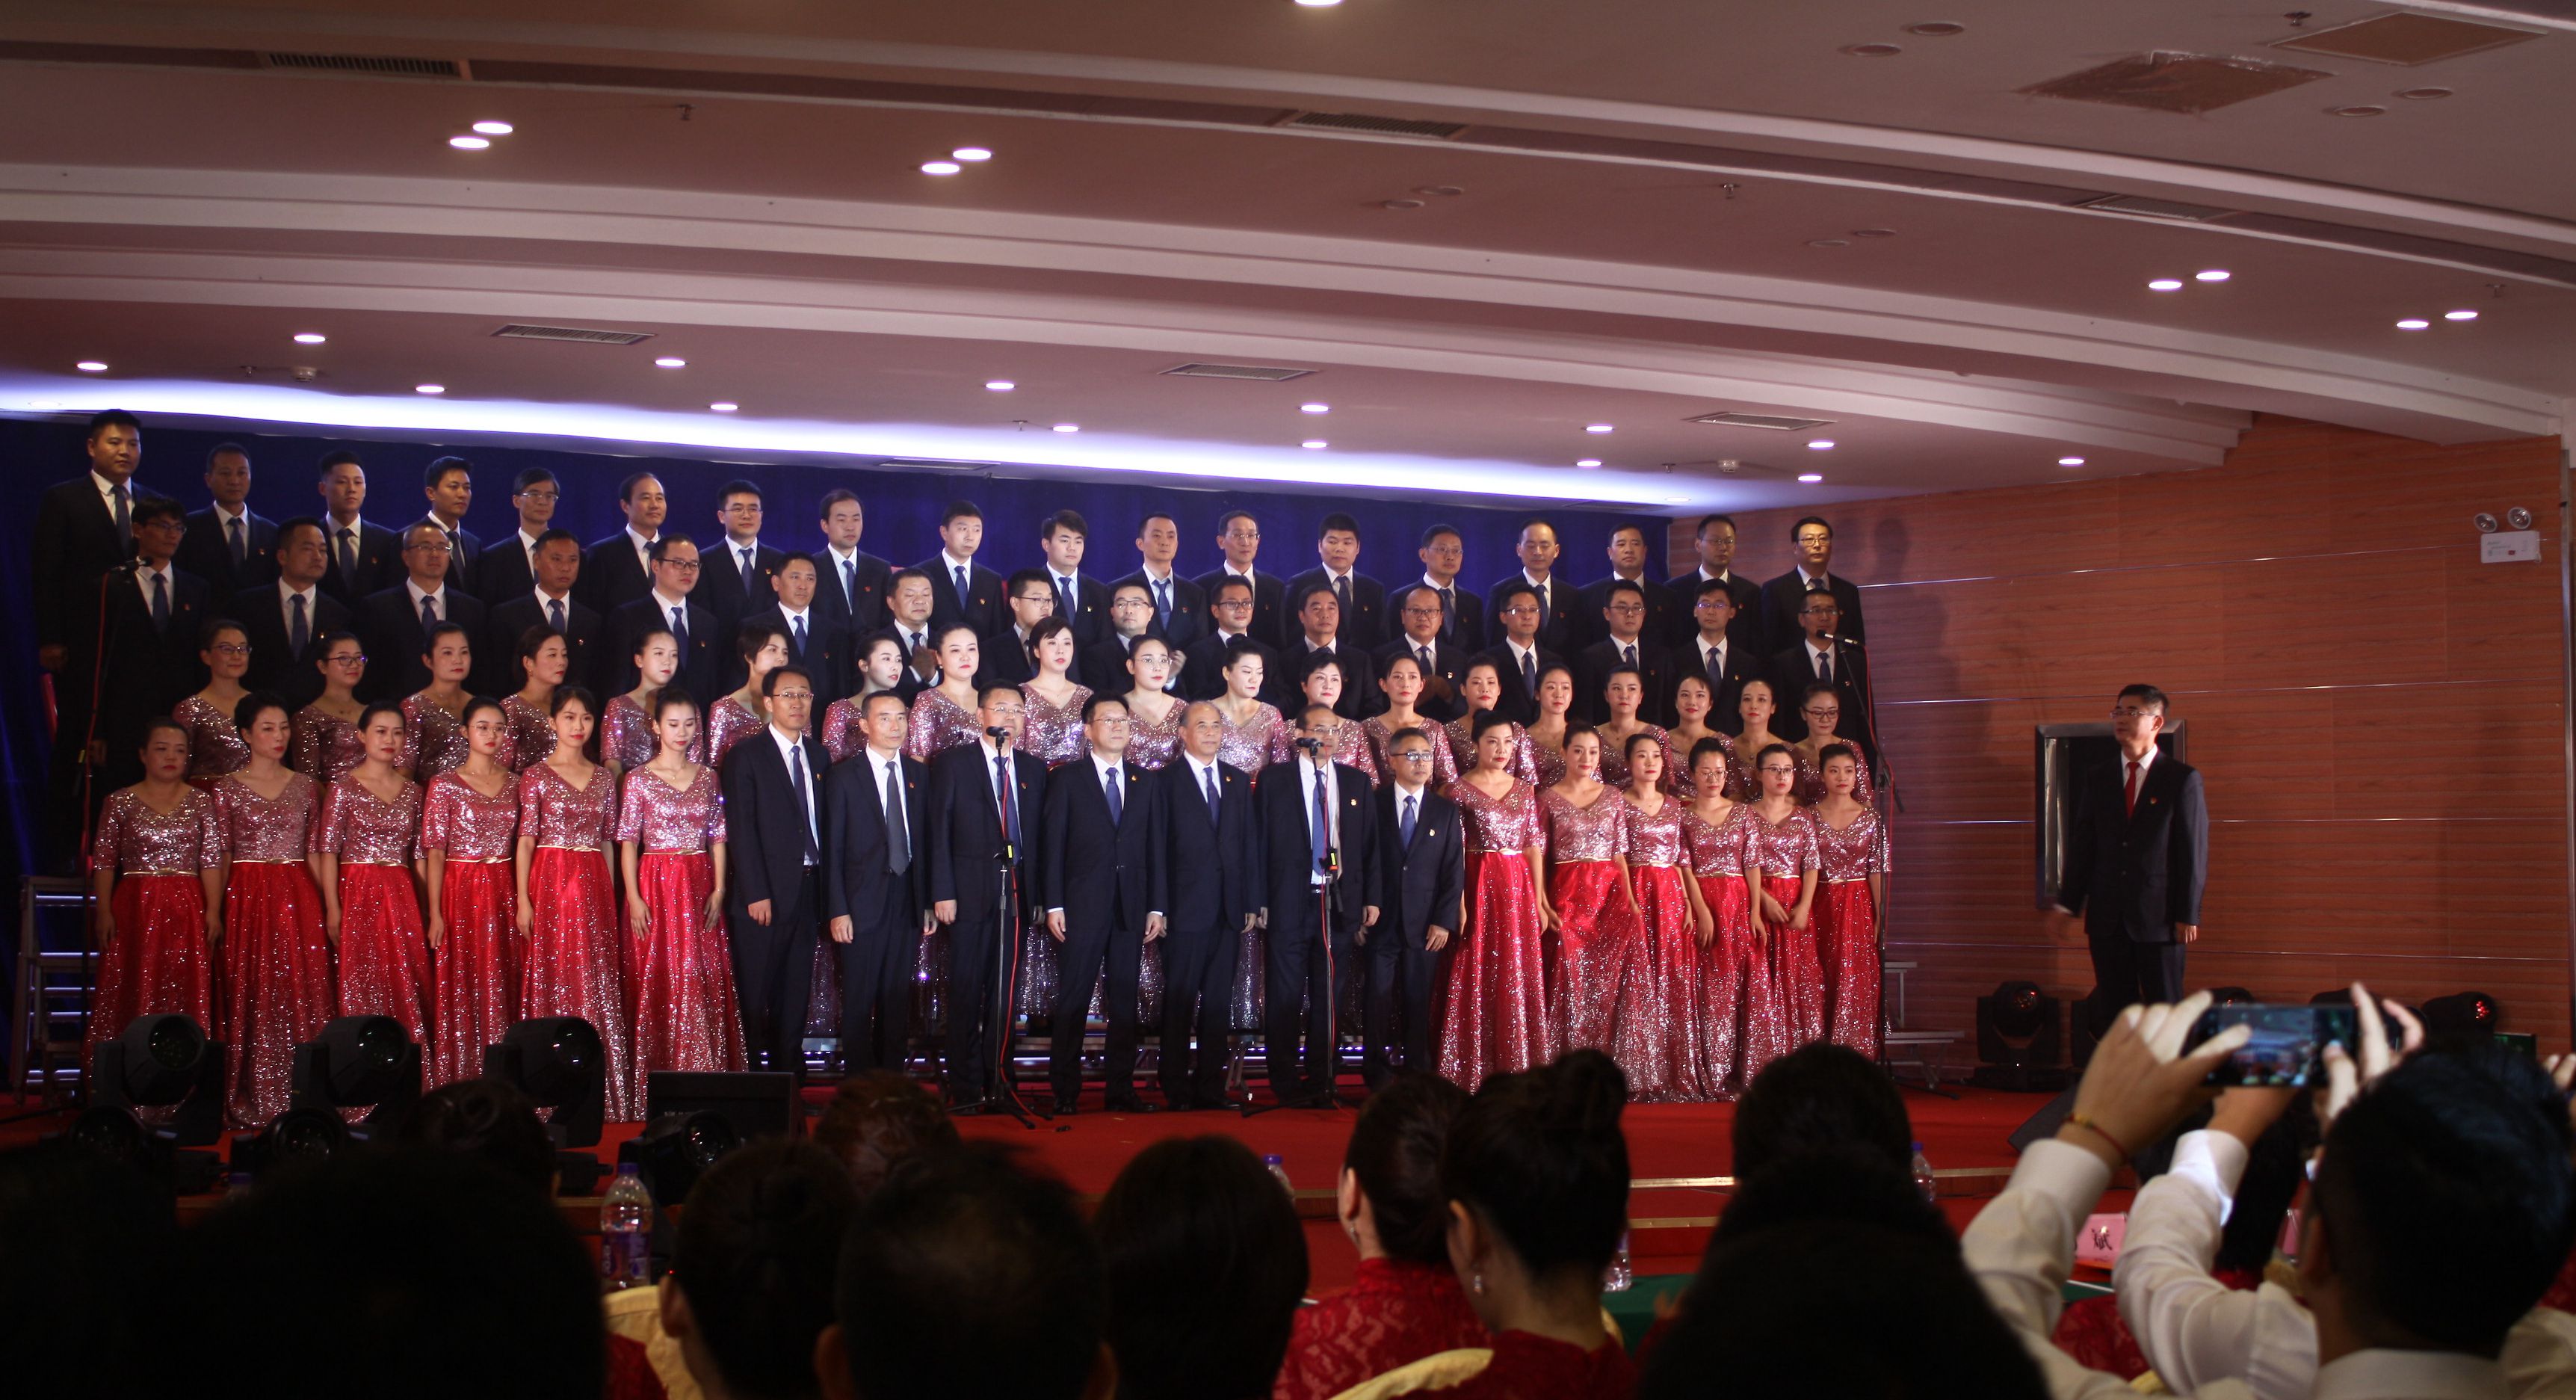 机场集团成功举办“最美歌声献祖国”庆祝中华人民共和国成立70周年歌咏会